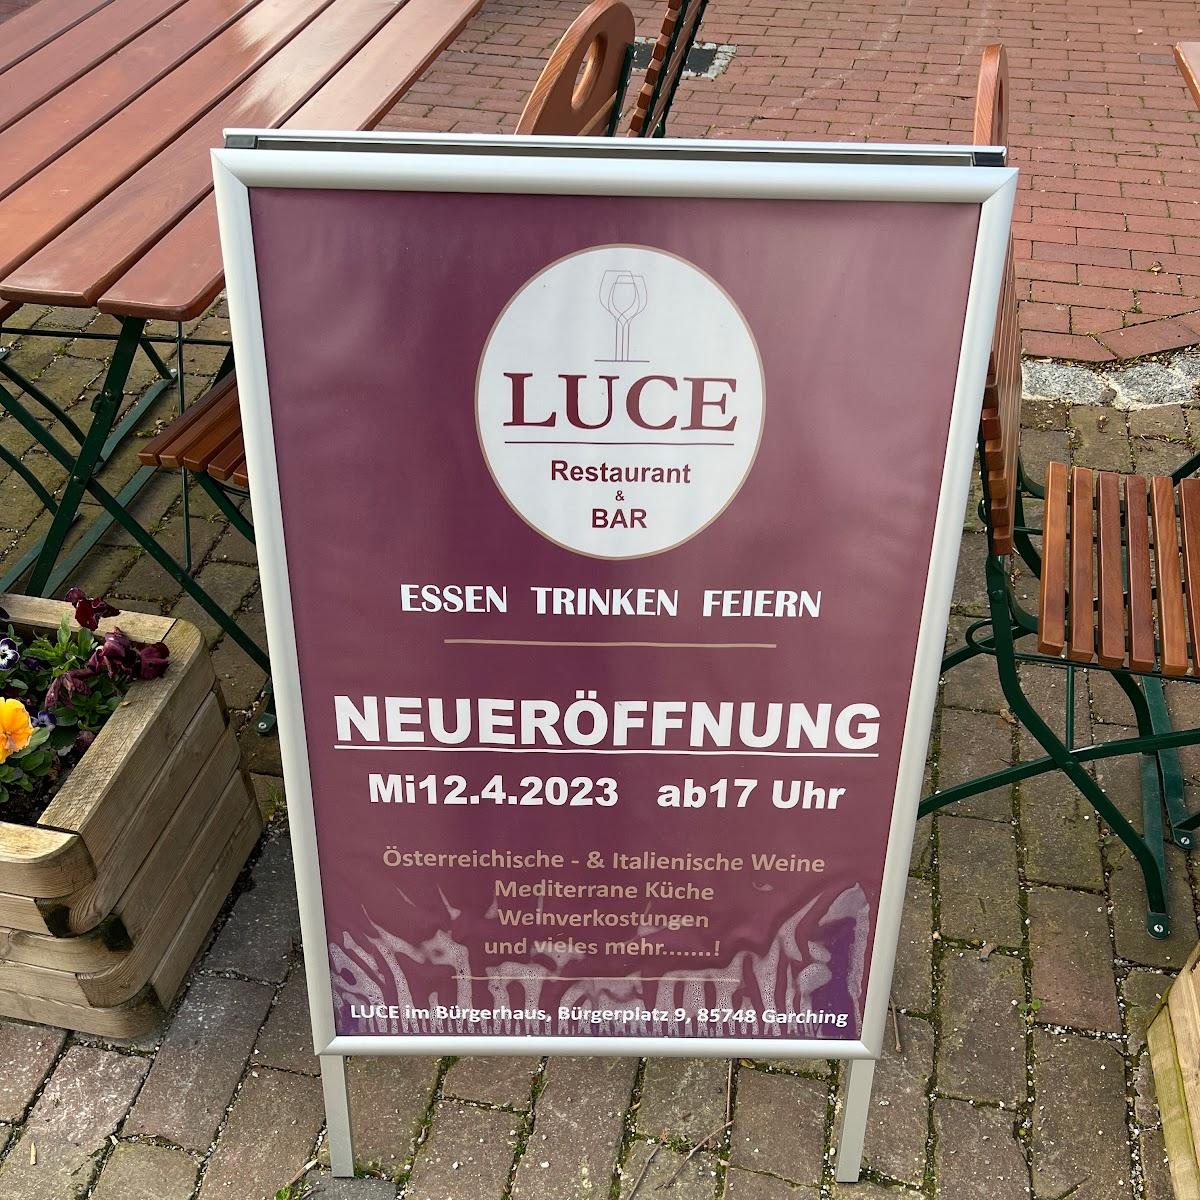 Restaurant "Luce Restaurant und Bar" in Garching bei München